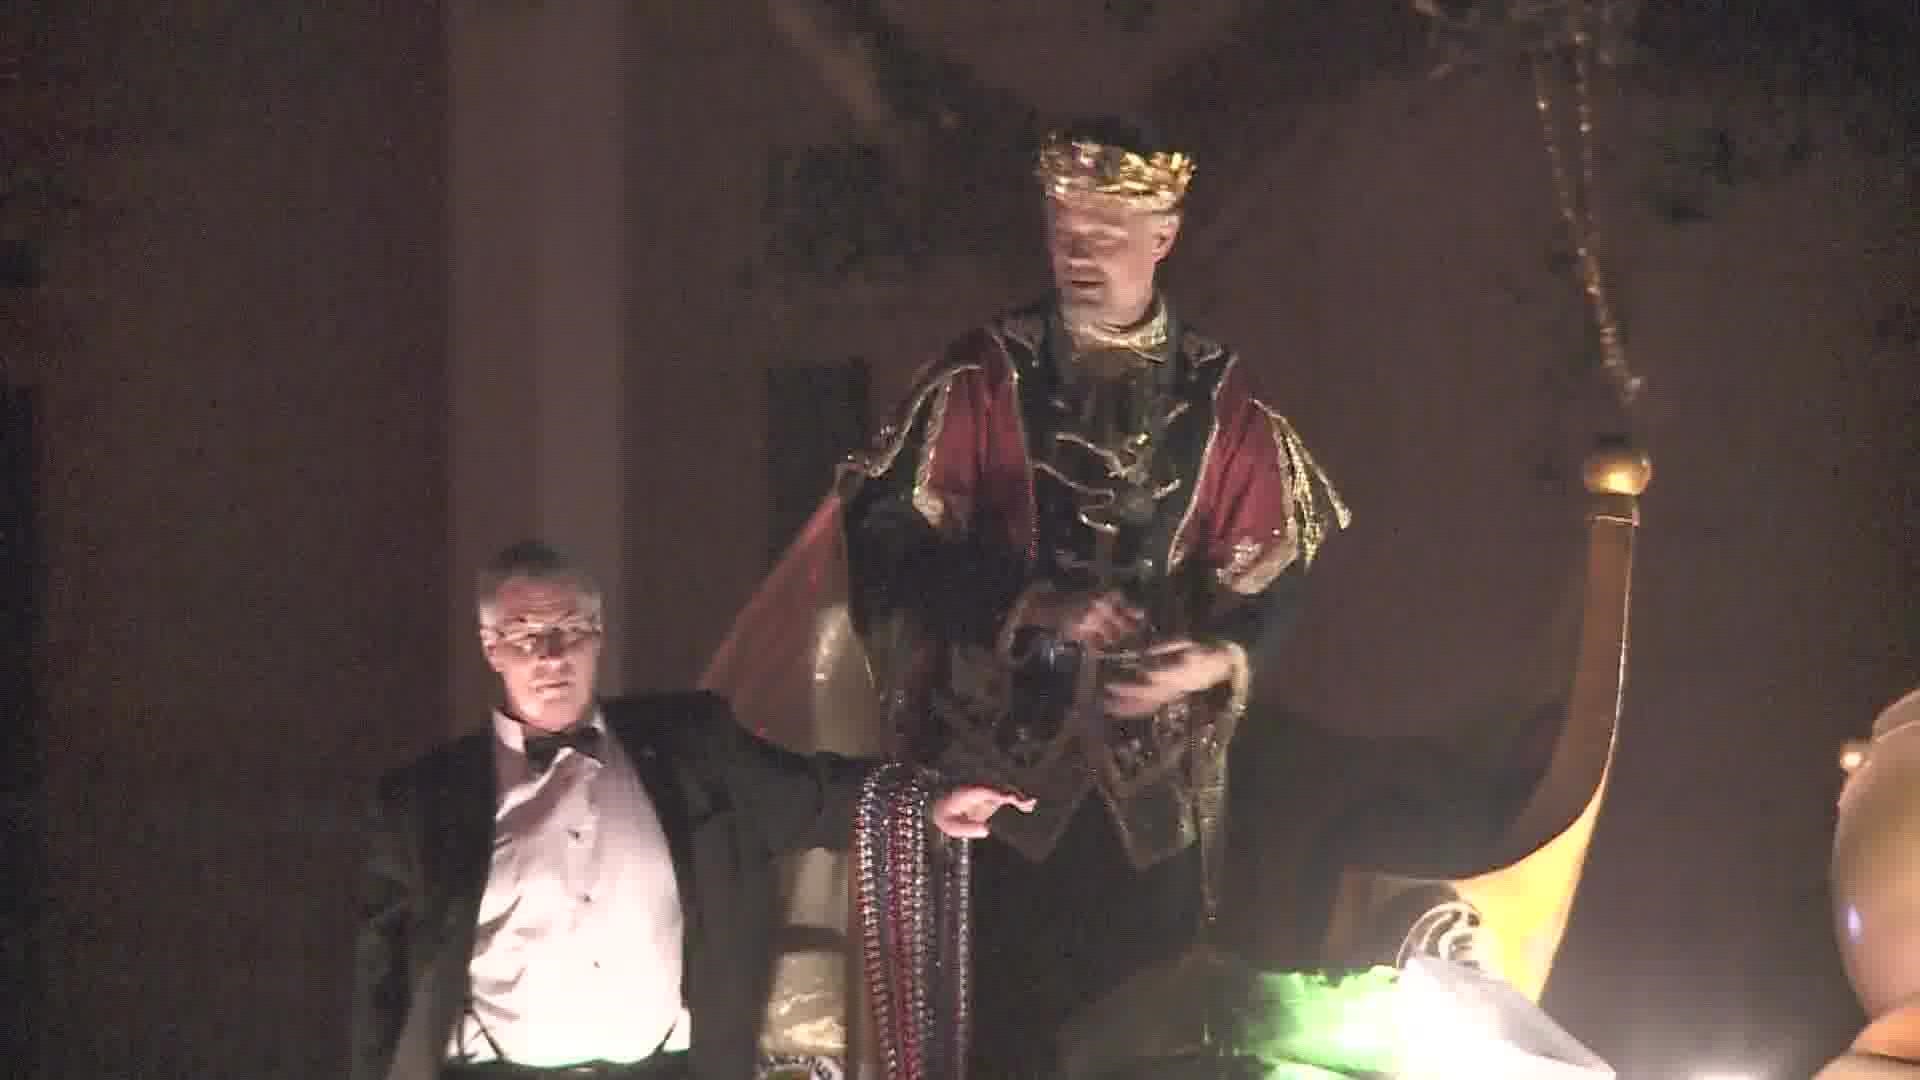 Josh Duhamel enjoying his reign as King of Bacchus.